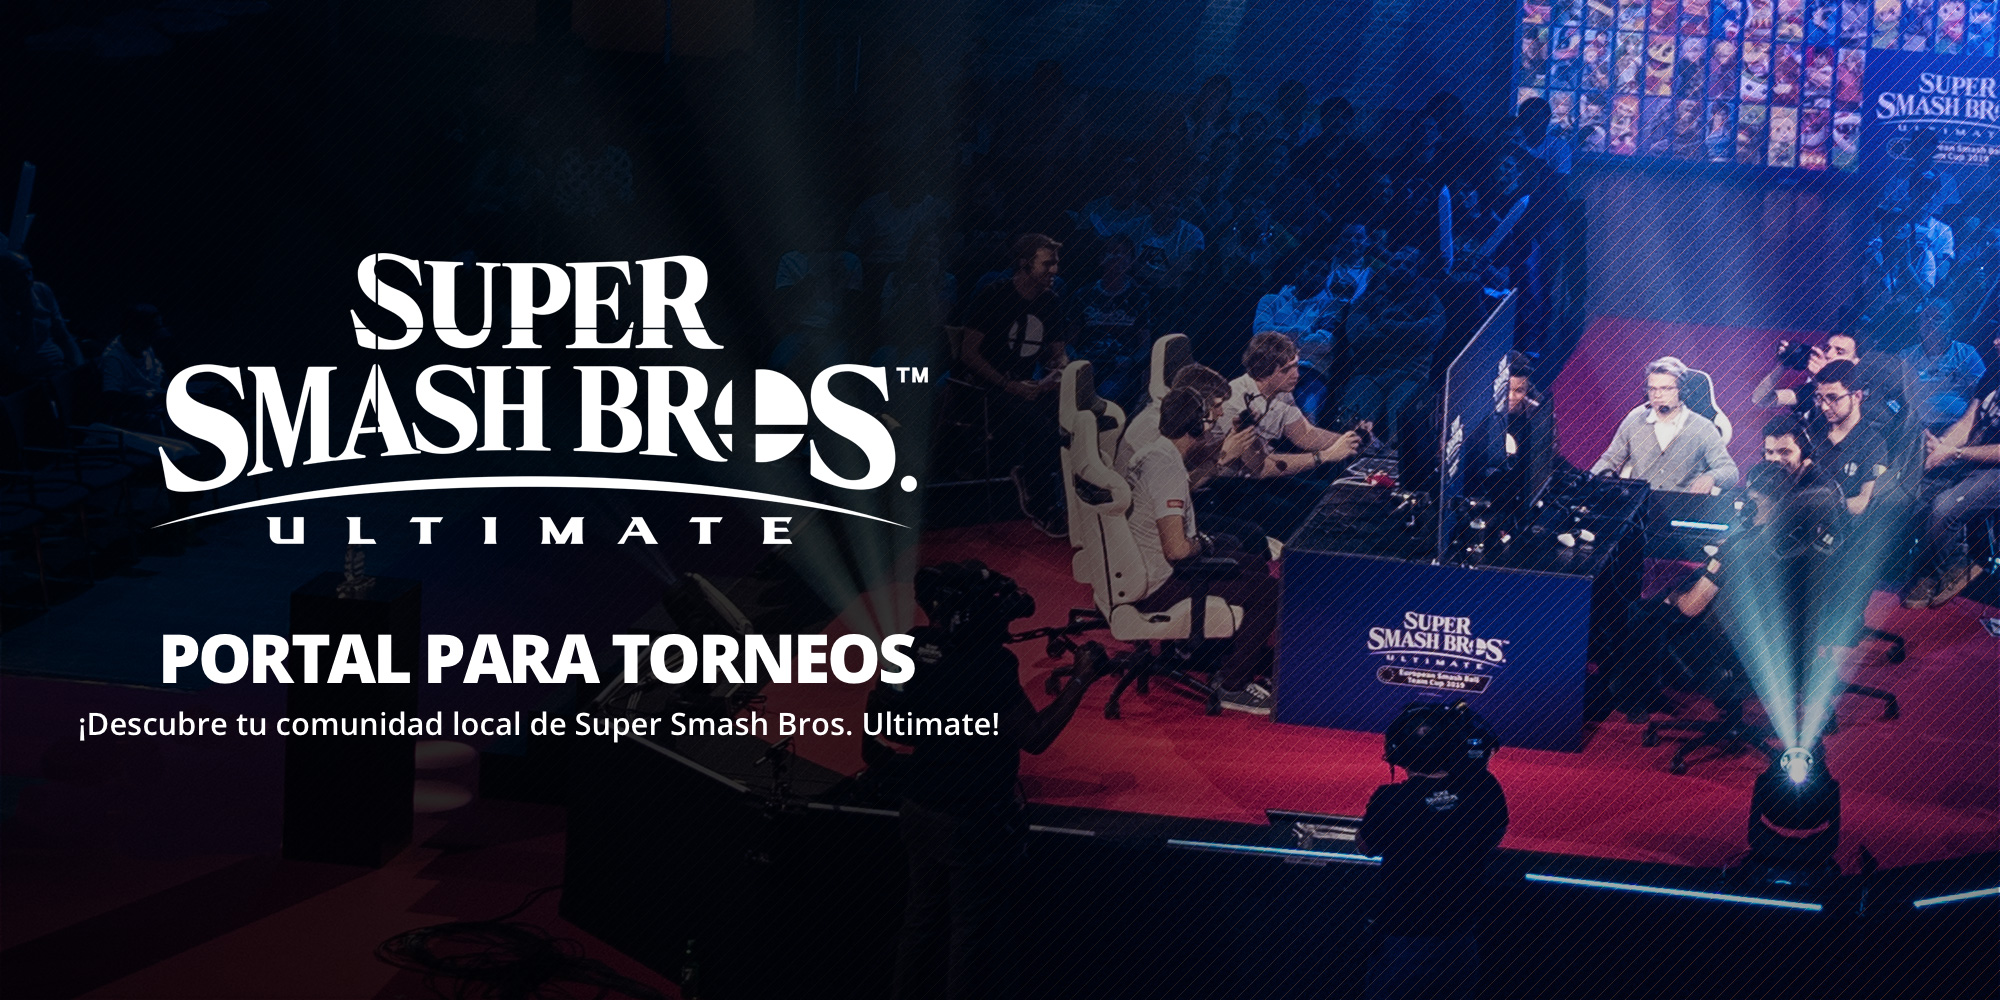 ¡Encontrad vuestra comunidad local de Super Smash Bros. con el portal para los torneos de Super Smash Bros. Ultimate!